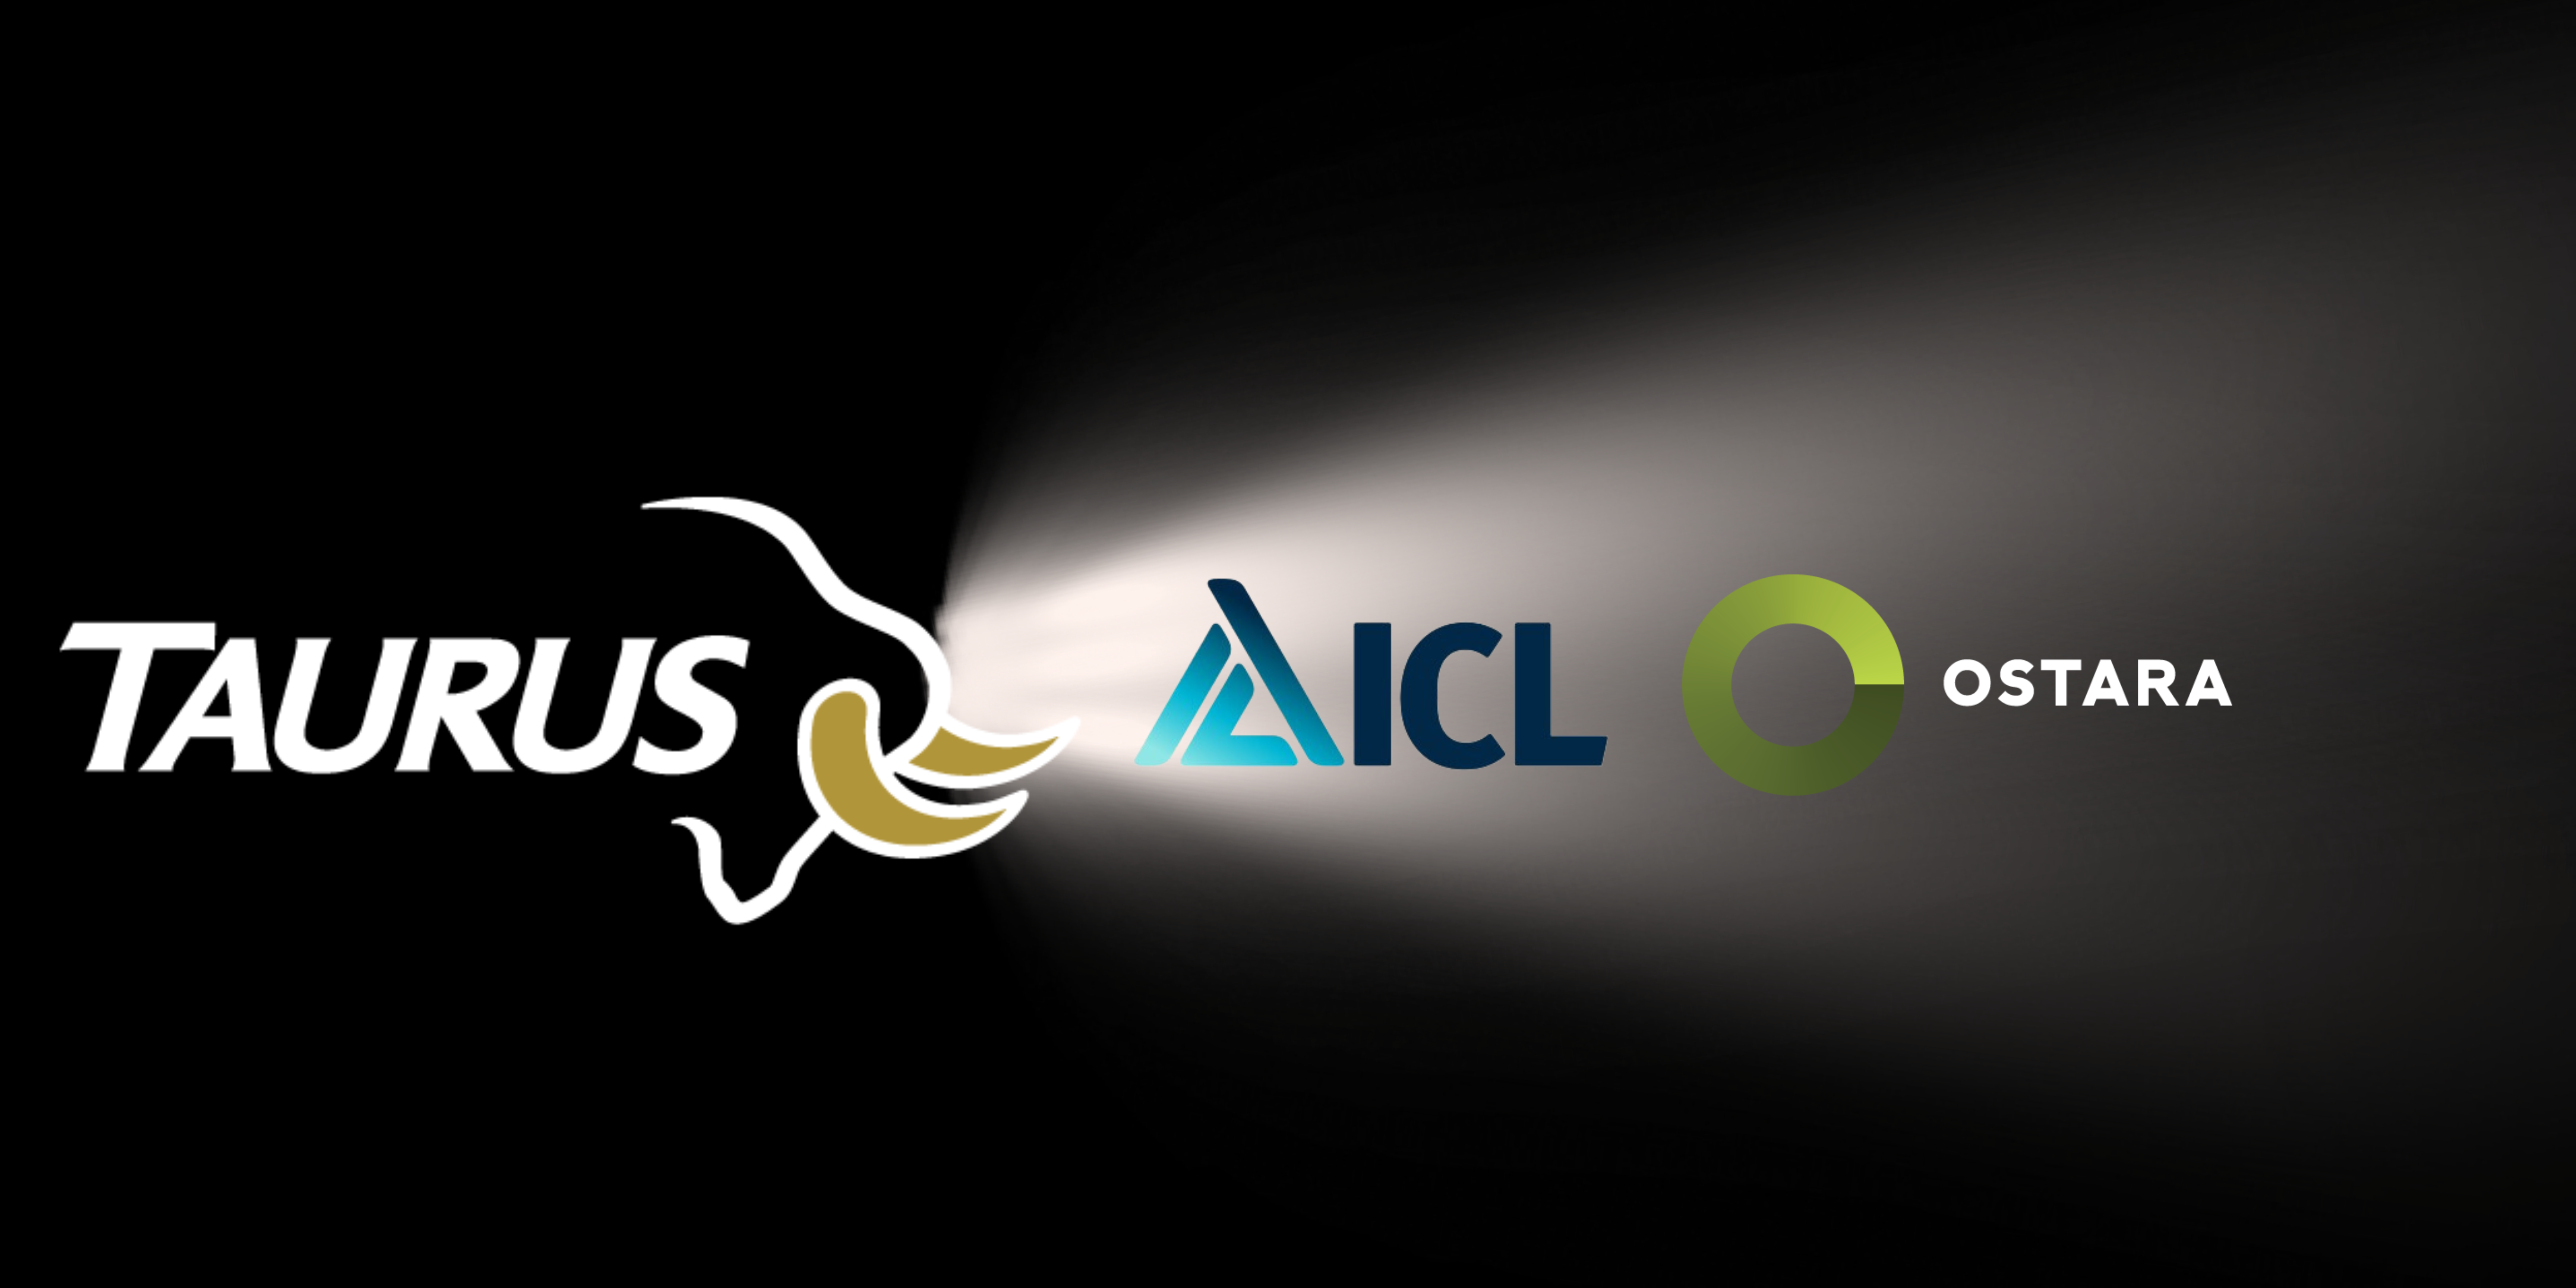 The taurus logo shining a spotlight on ICL and Ostara company Logos